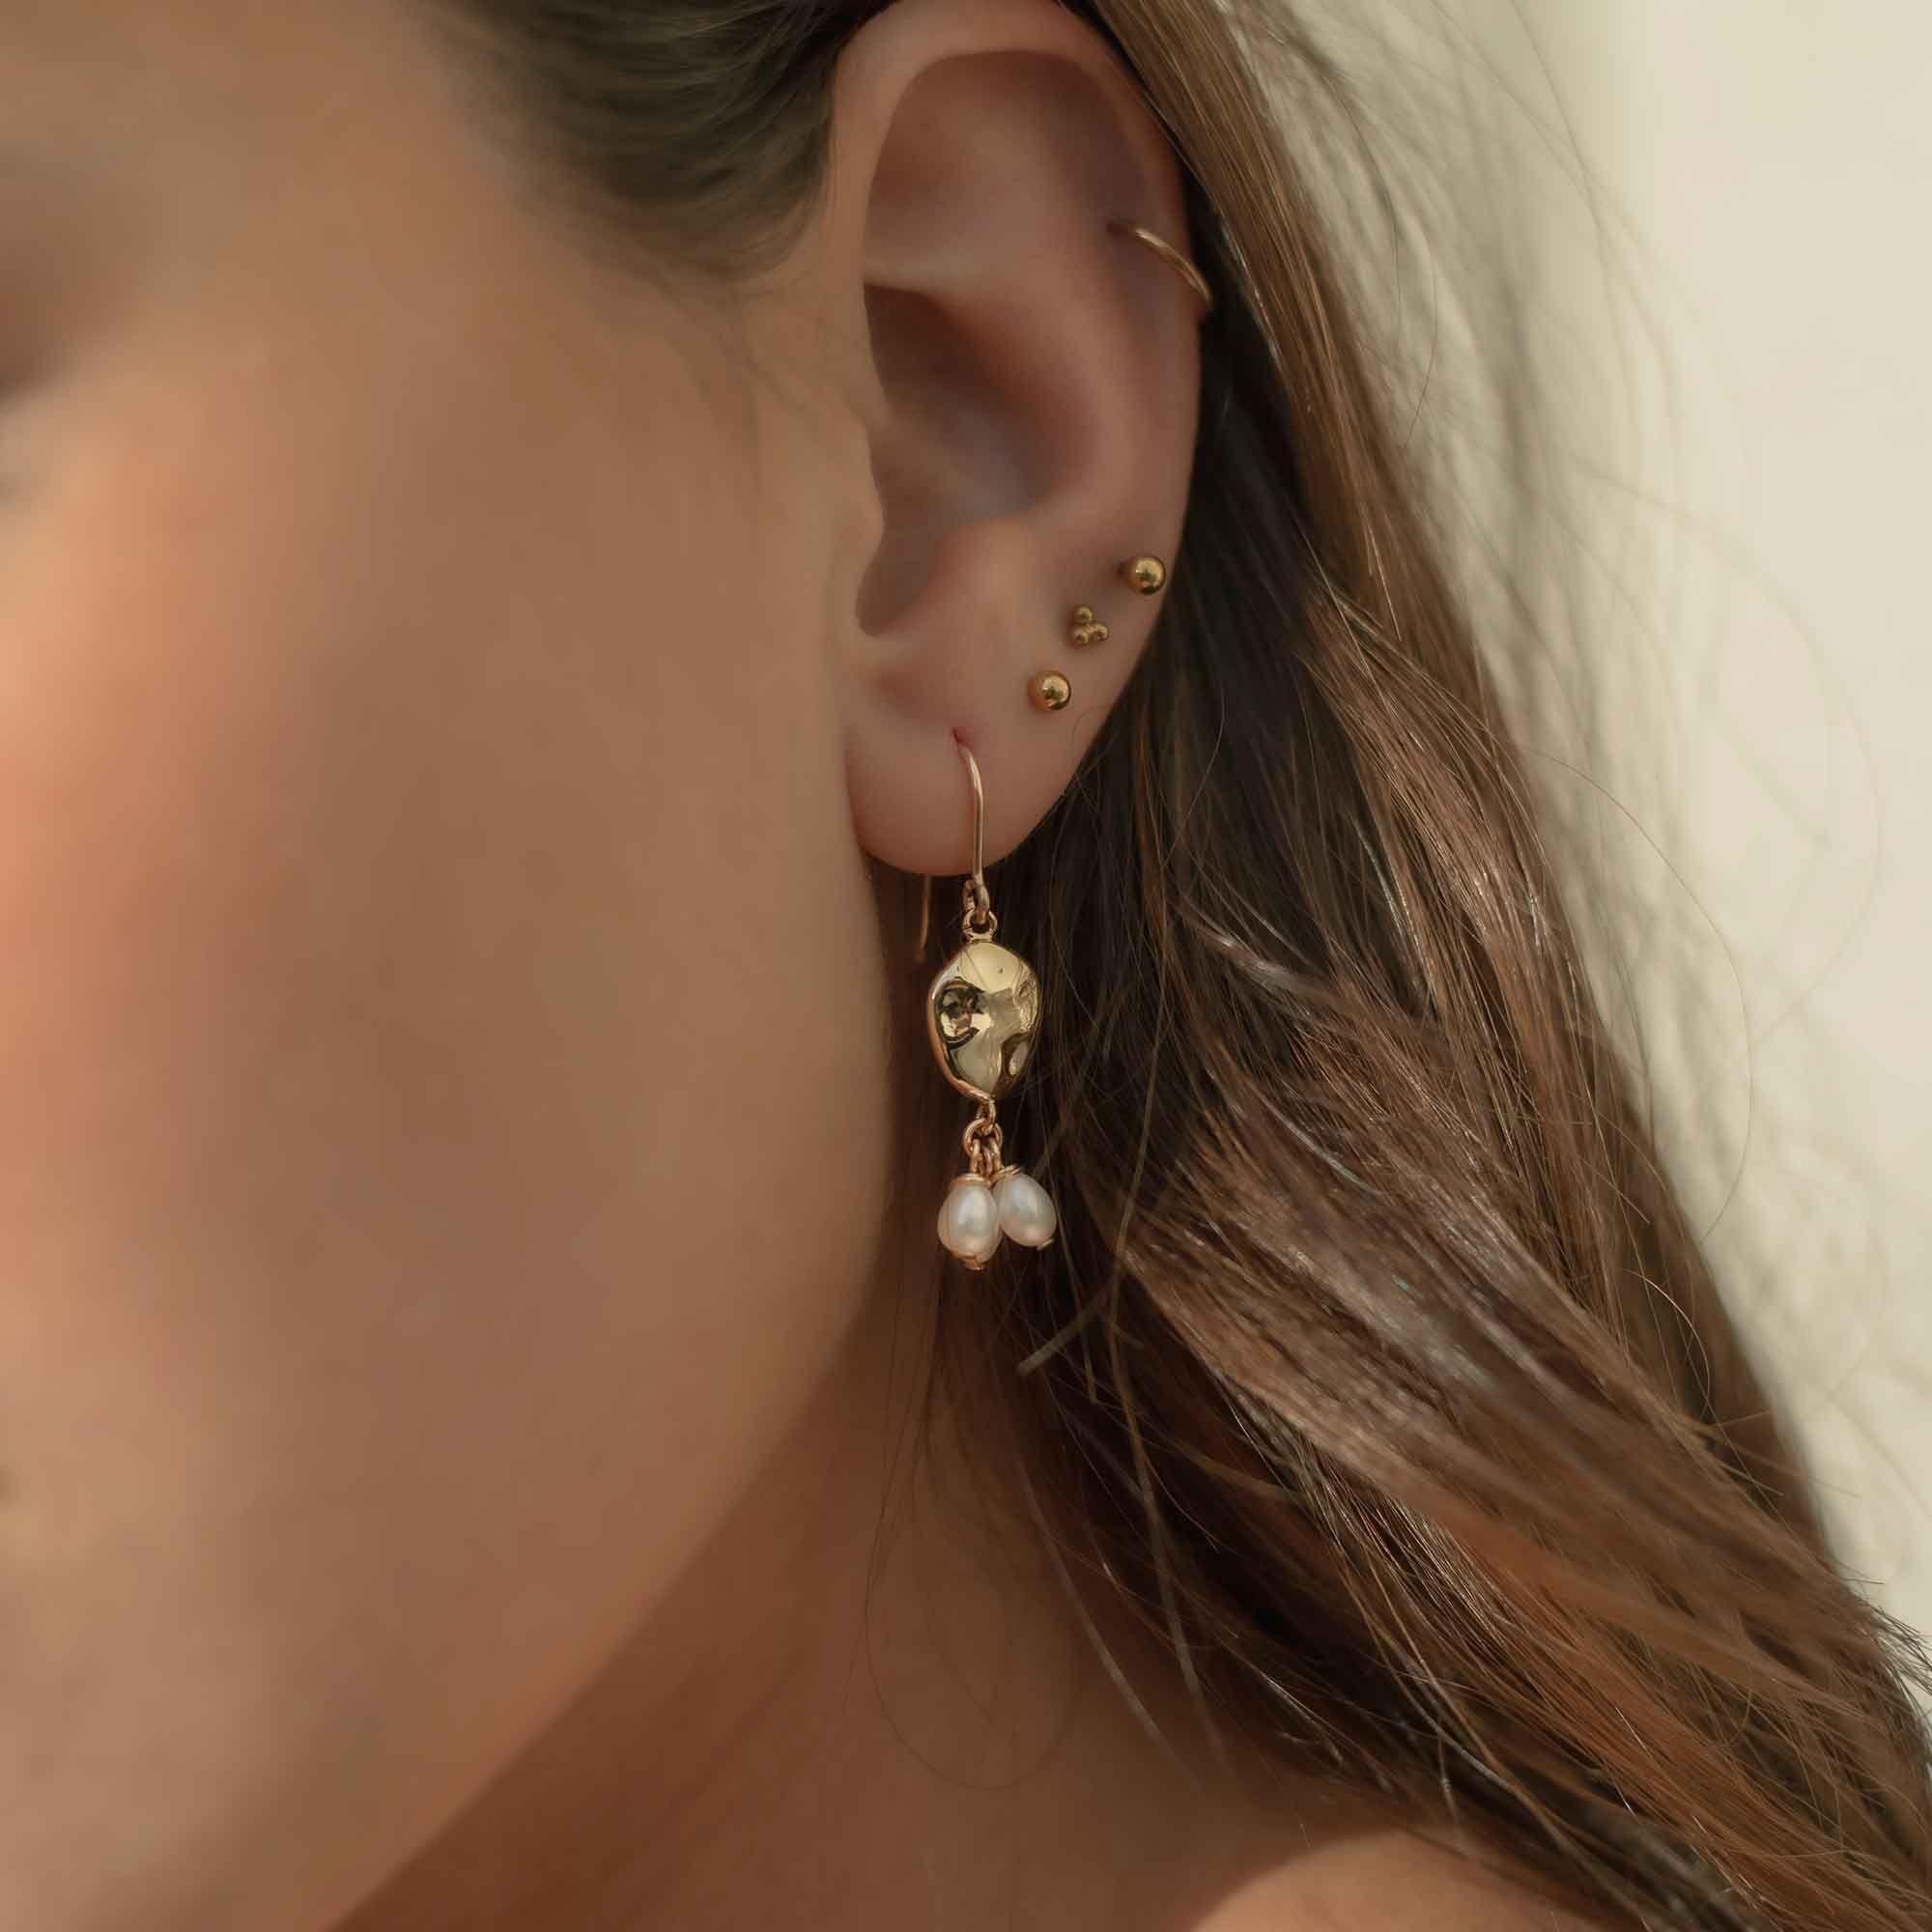 bijoux sandrine devost earrings gold filled pearl